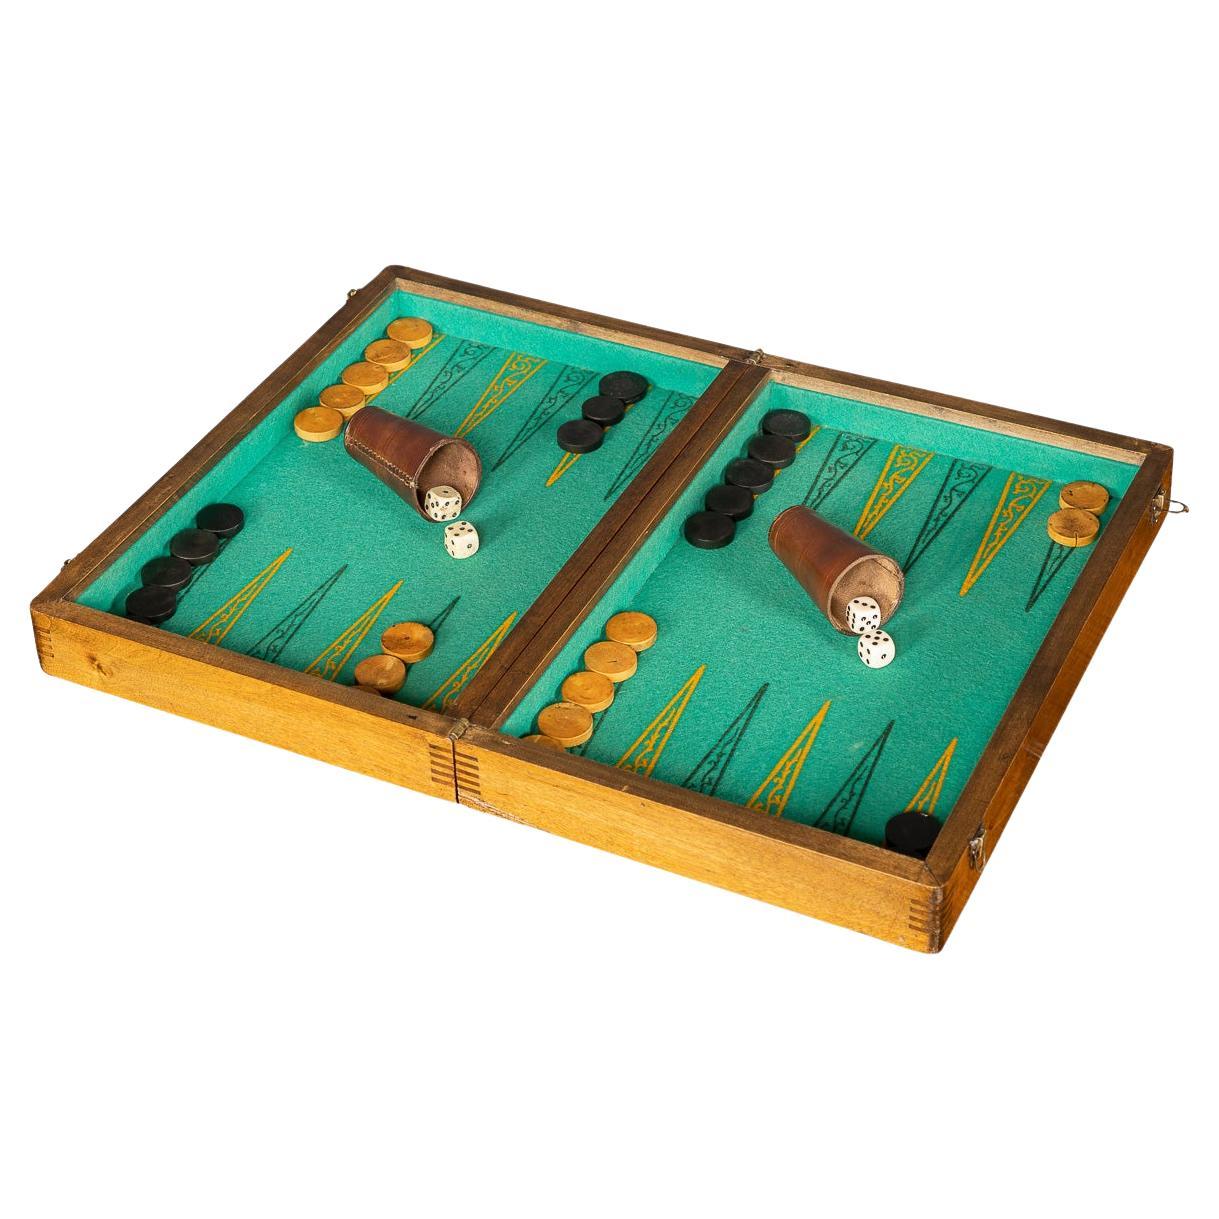 Britisches Backgammon- und Zeichnungsspielkästchen des 20. Jahrhunderts, um 1950